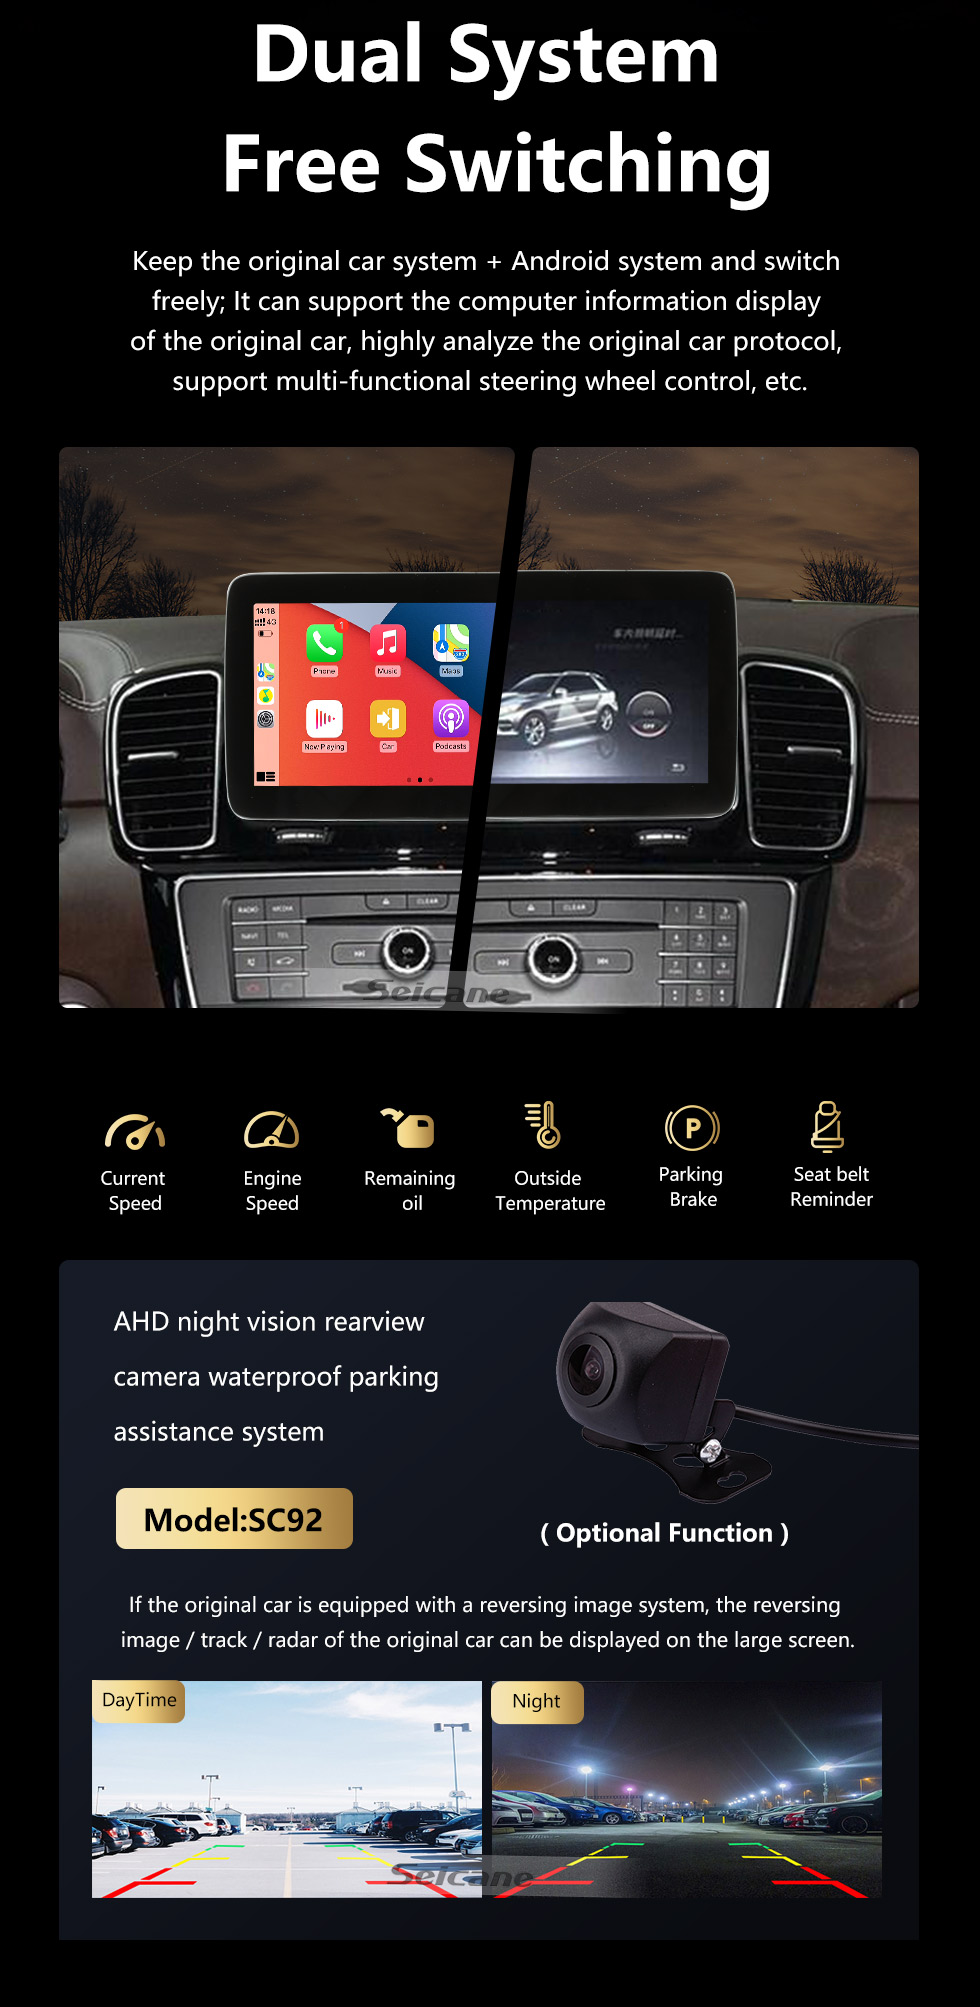 Seicane Carplay 9 polegadas Android 10.0 para 2015 2016 2017 2018 Mercedes GLE NTG5.0 Sistema de navegação GPS estéreo com Bluetooth Android Auto suporte rede 4G